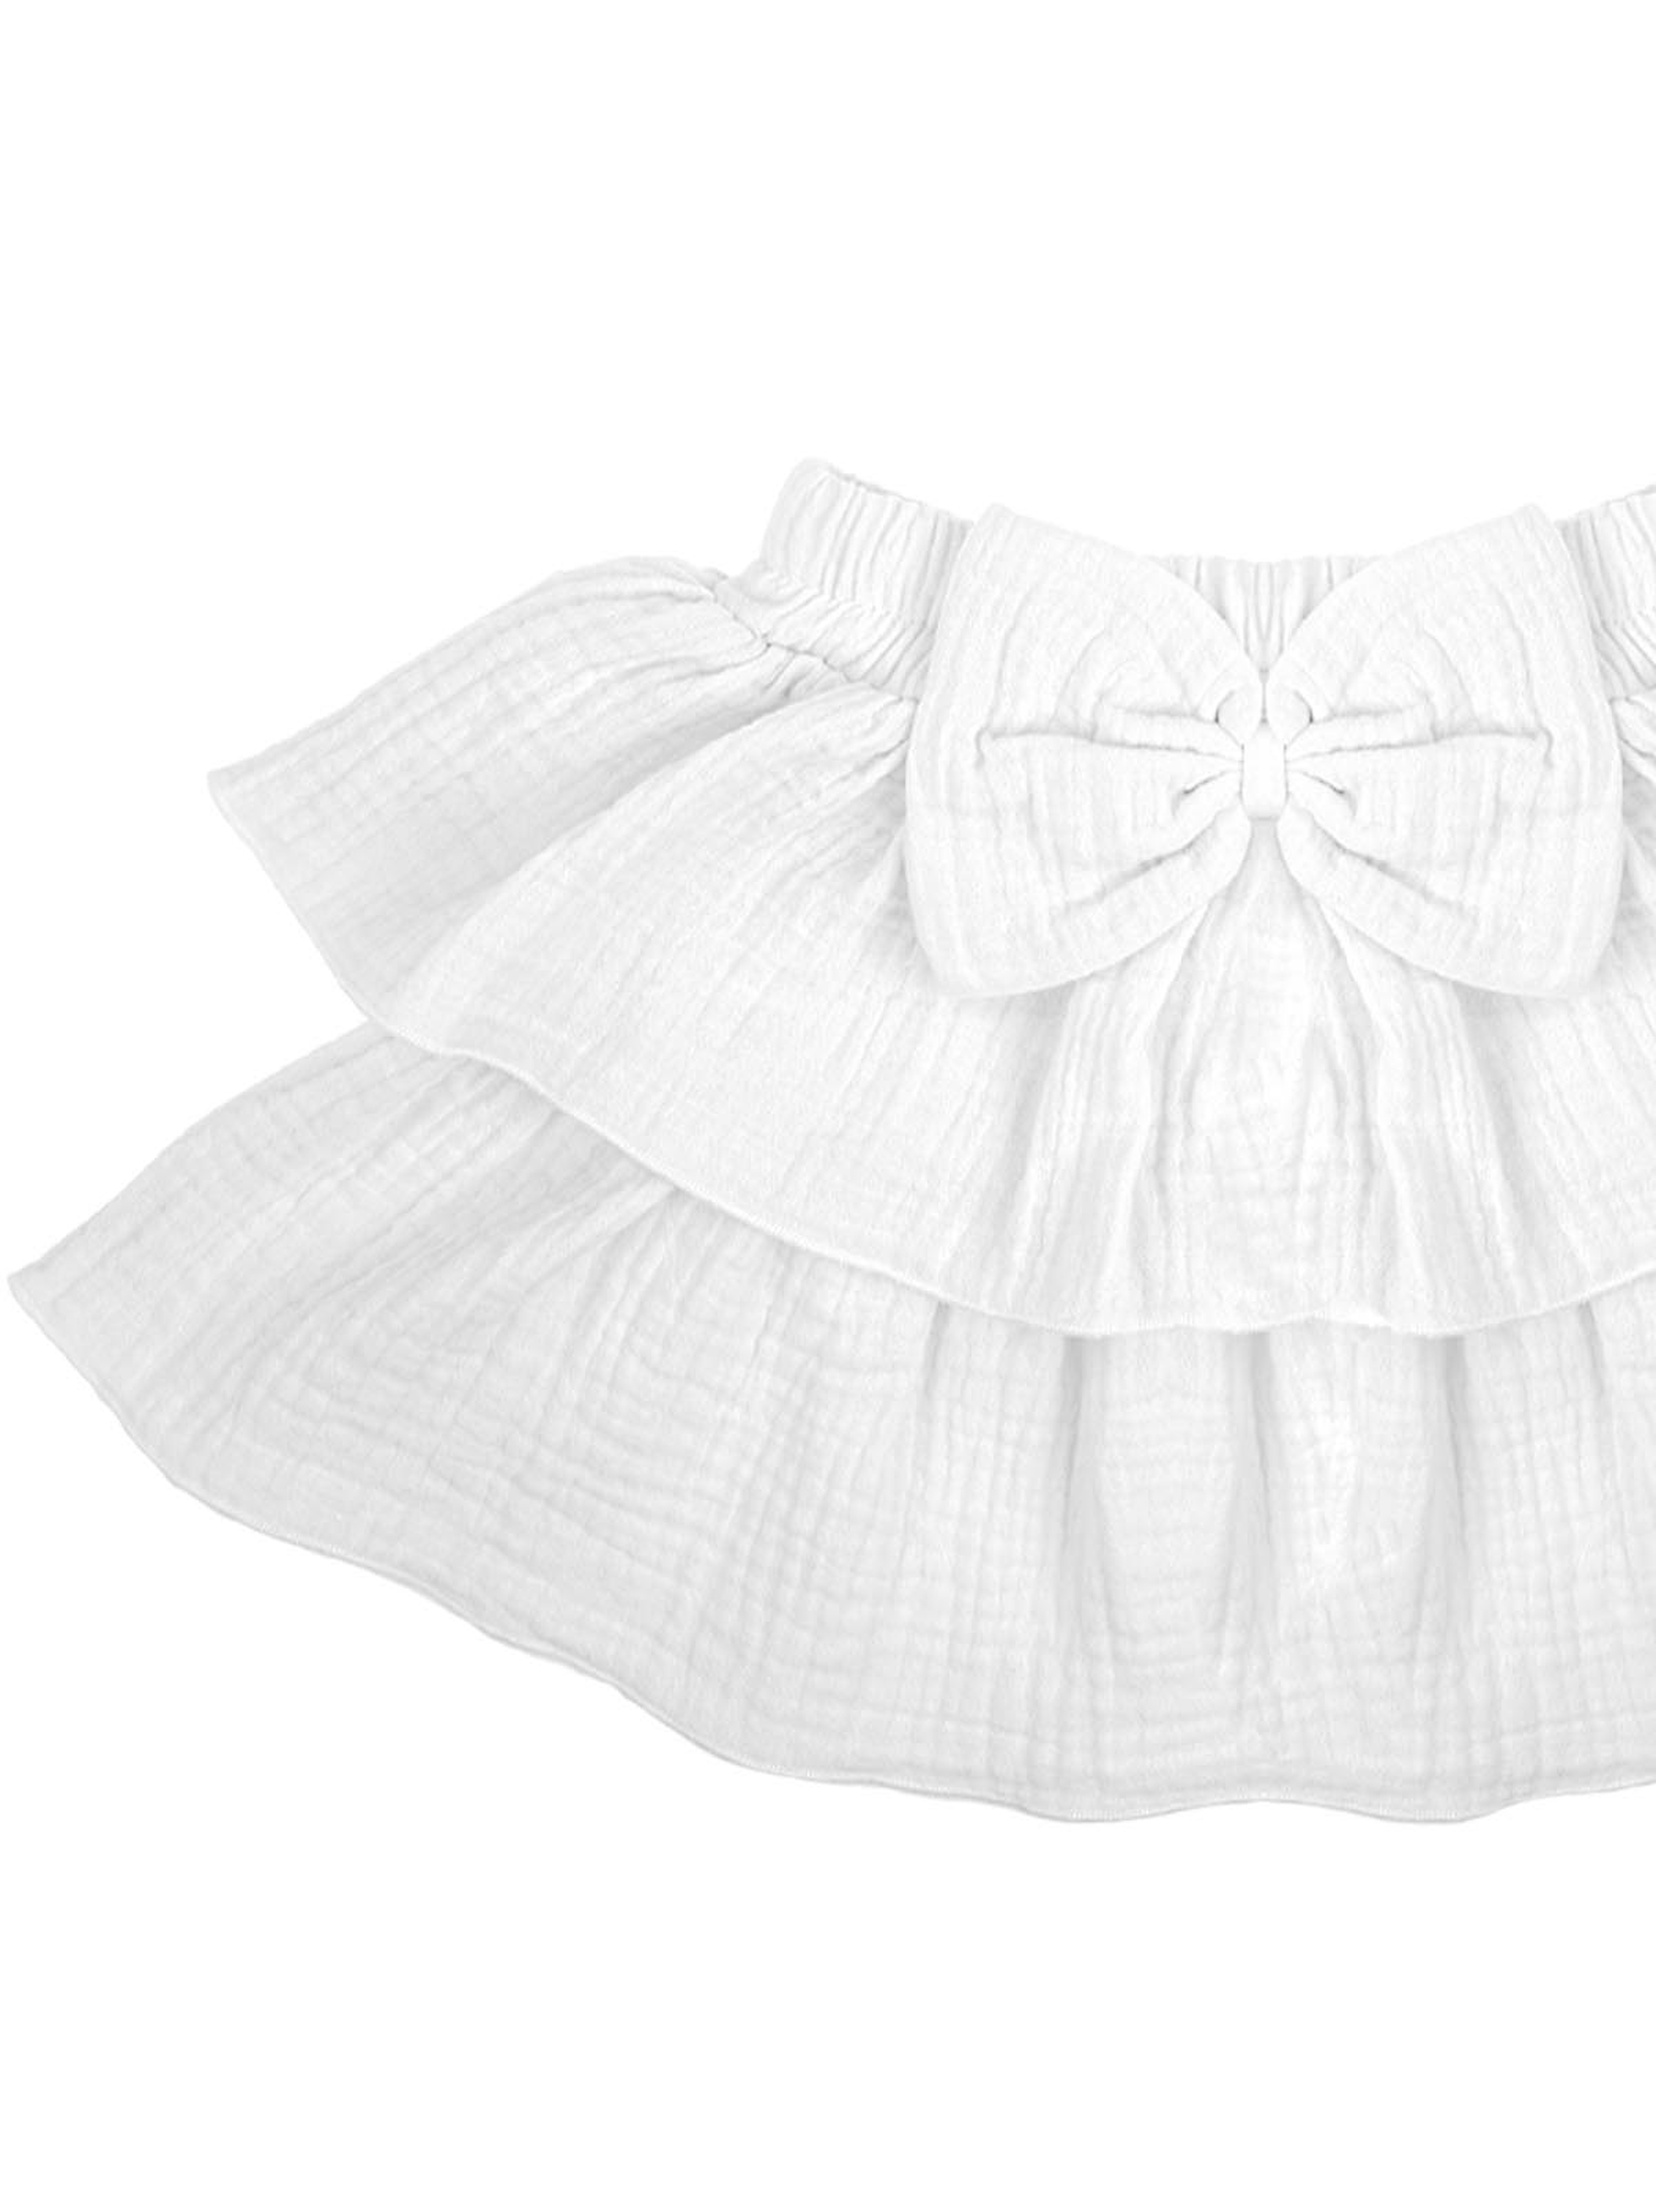 Muślinowa spódnica dziewczęca w kolorze białym